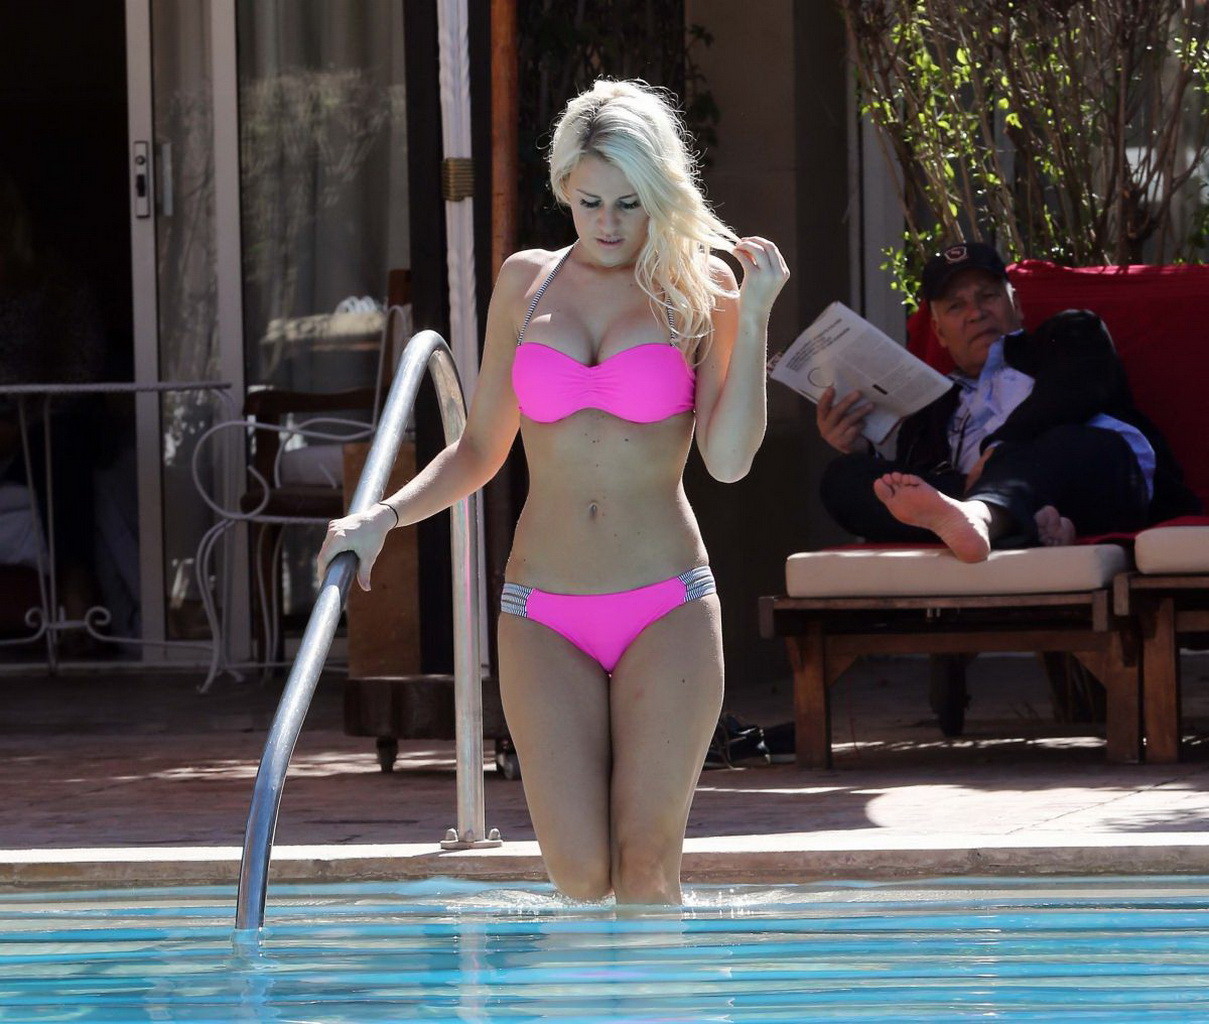 Danielle armstrong montre son corps bien dessiné dans un minuscule bikini rose.
 #75198588